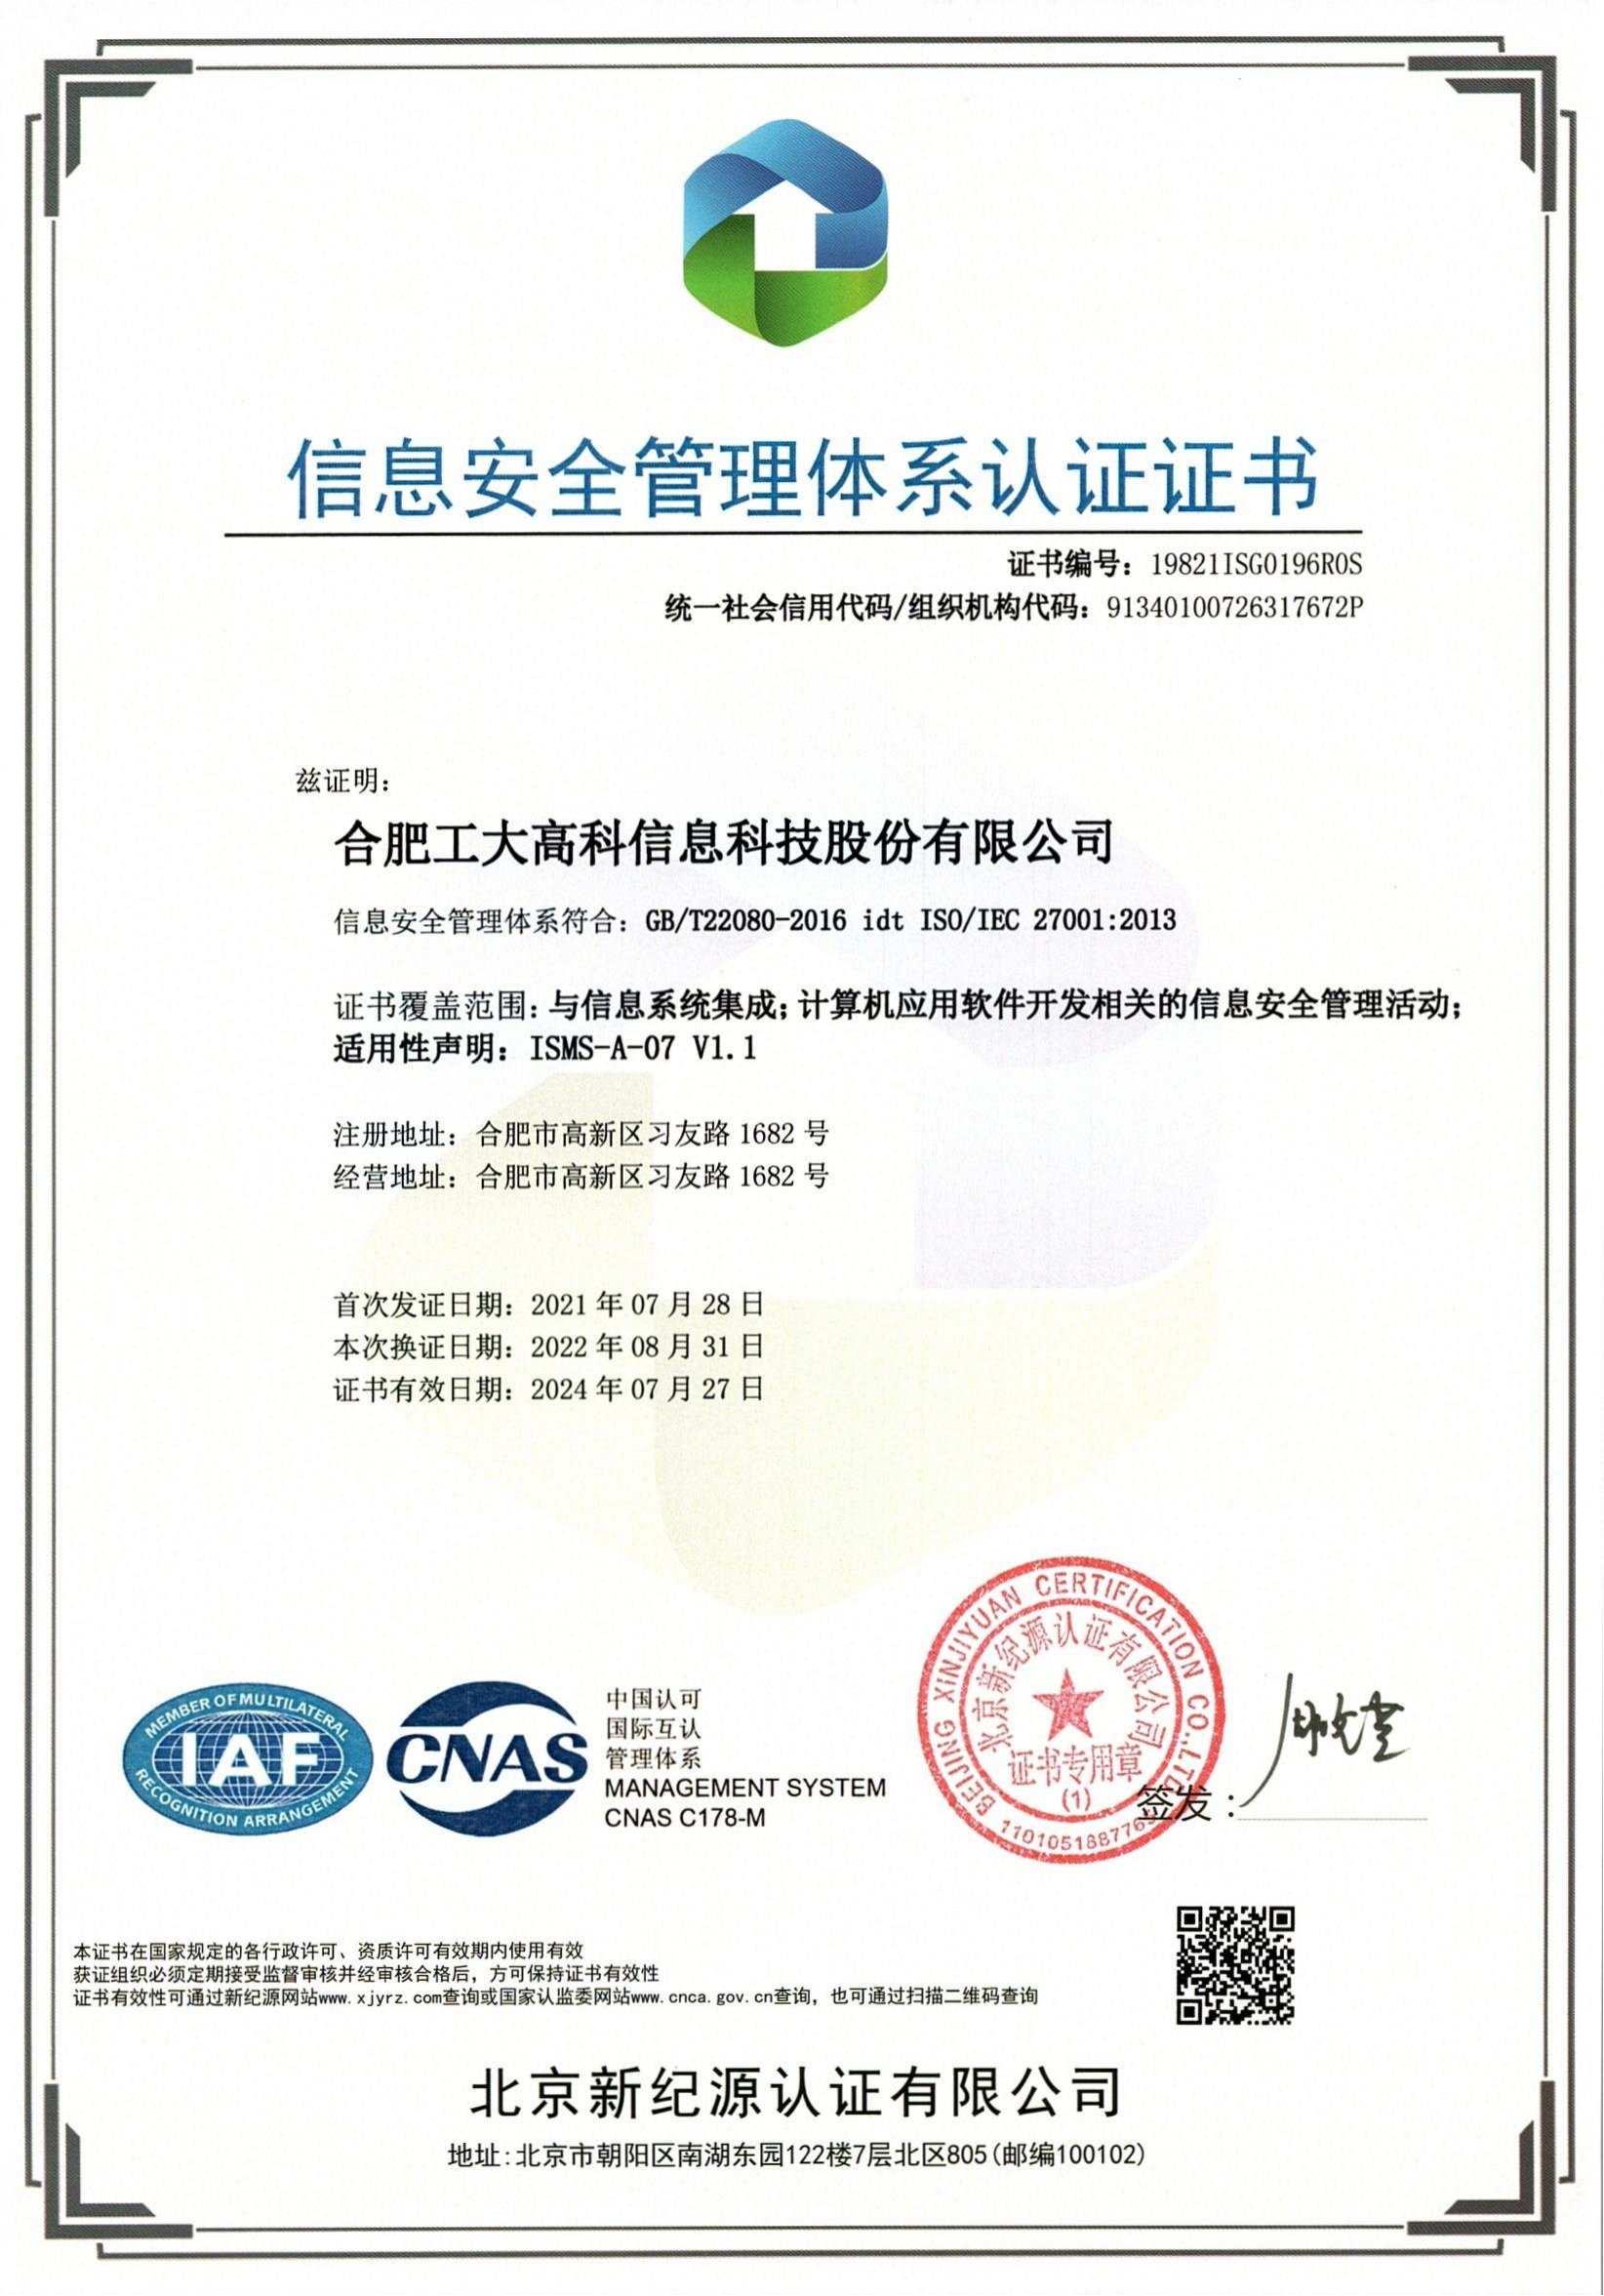 A57 信息安全管理體系認證證書